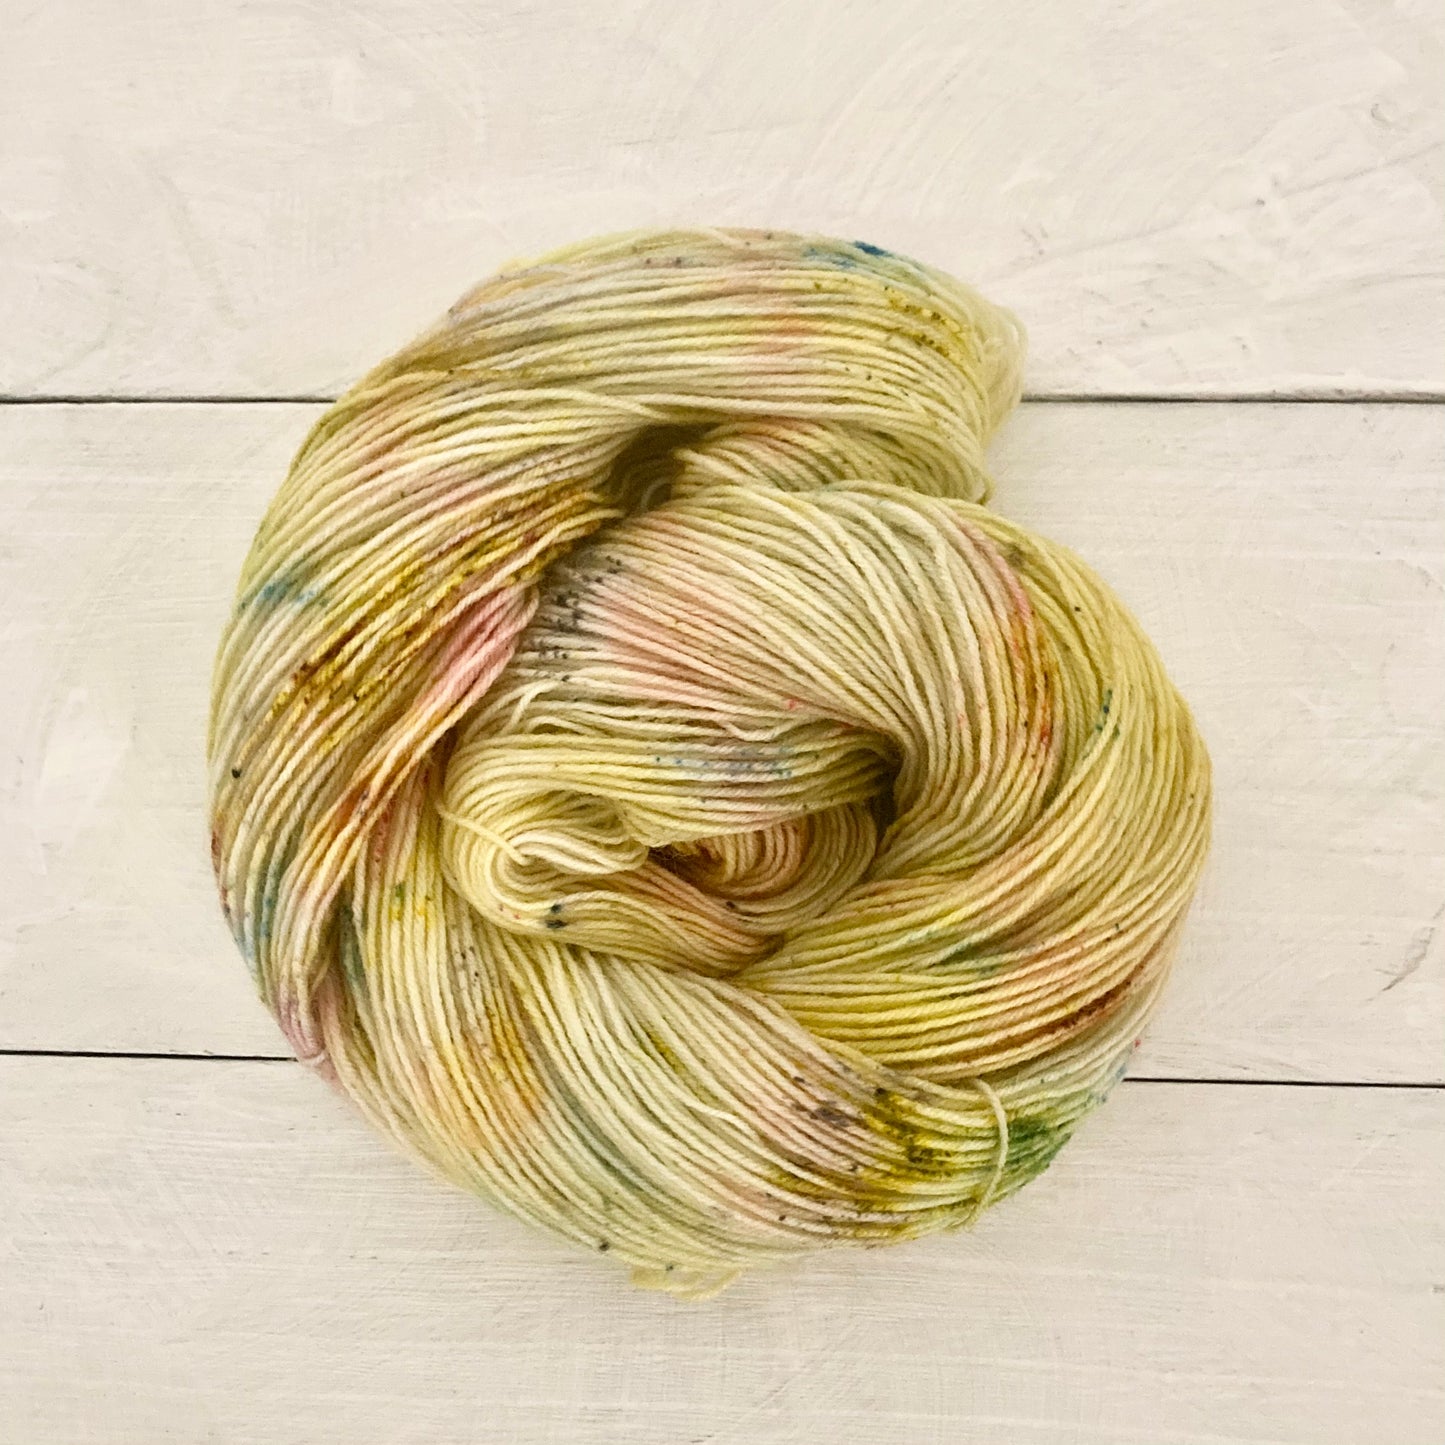 Hand-dyed yarn No.64 sock yarn "Freias Äpfel"